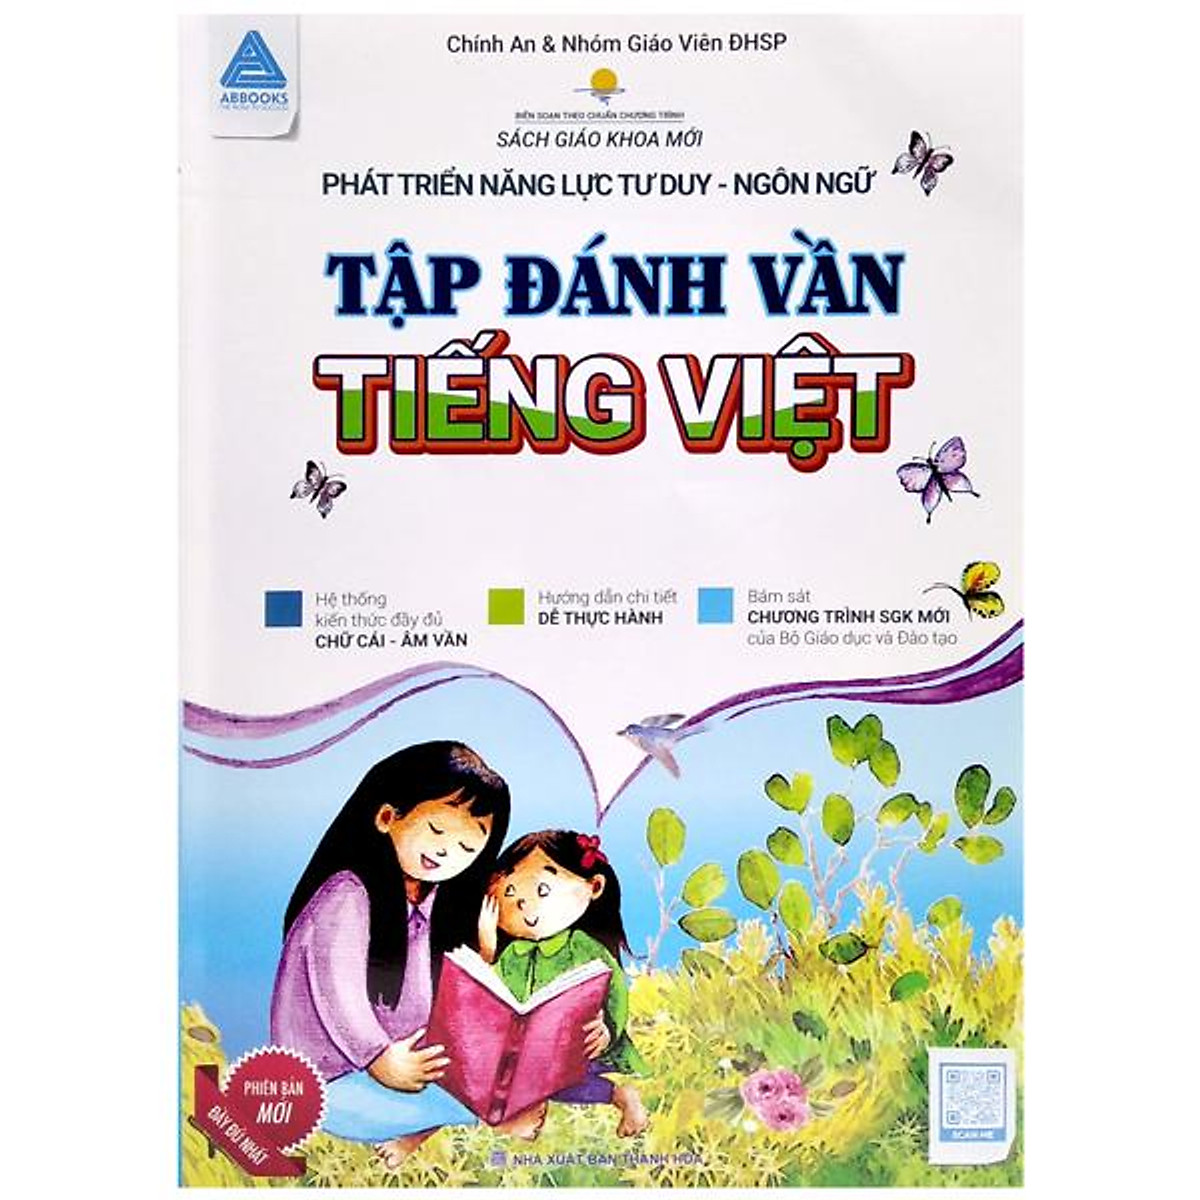 Phát Triển Năng Lực Tư Duy Ngôn Ngữ - Tập Đánh Vần Tiếng Việt